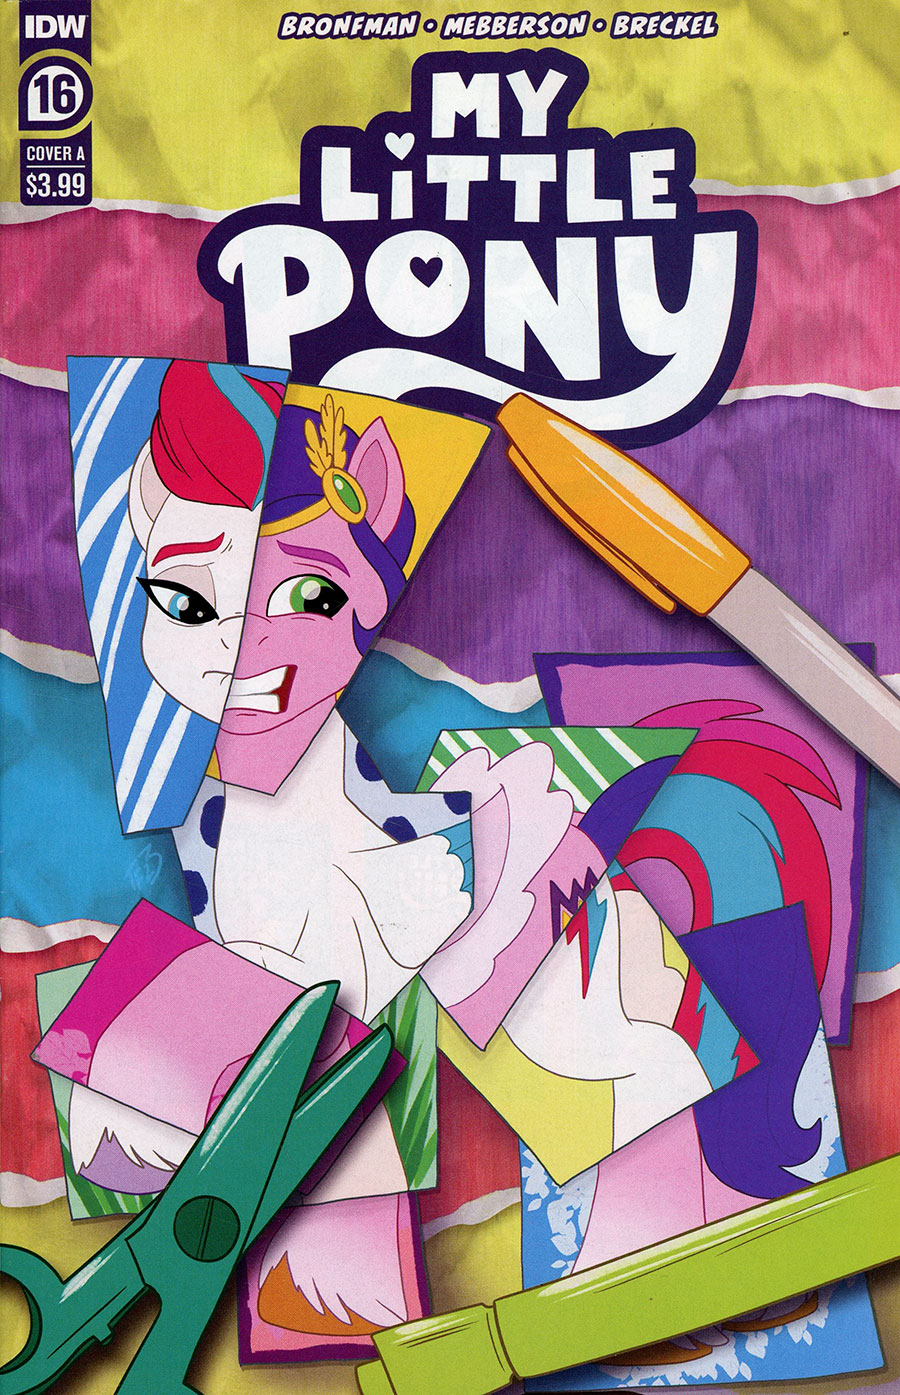 My Little Pony #16 Cover A Regular Trish Forstner Cover